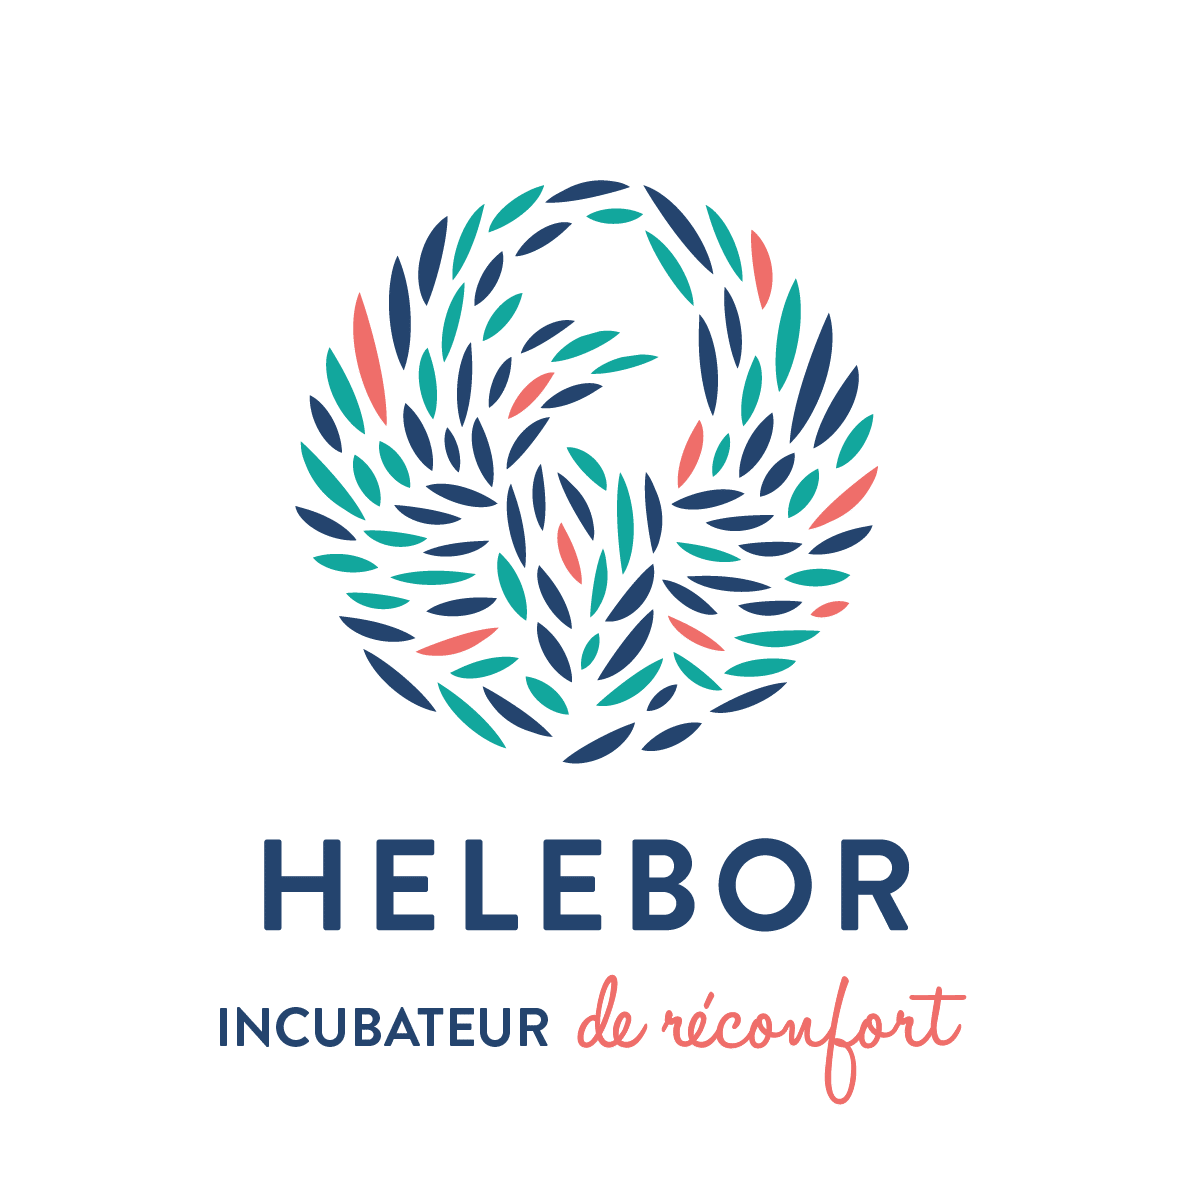 Helebor - Soins Palliatifs